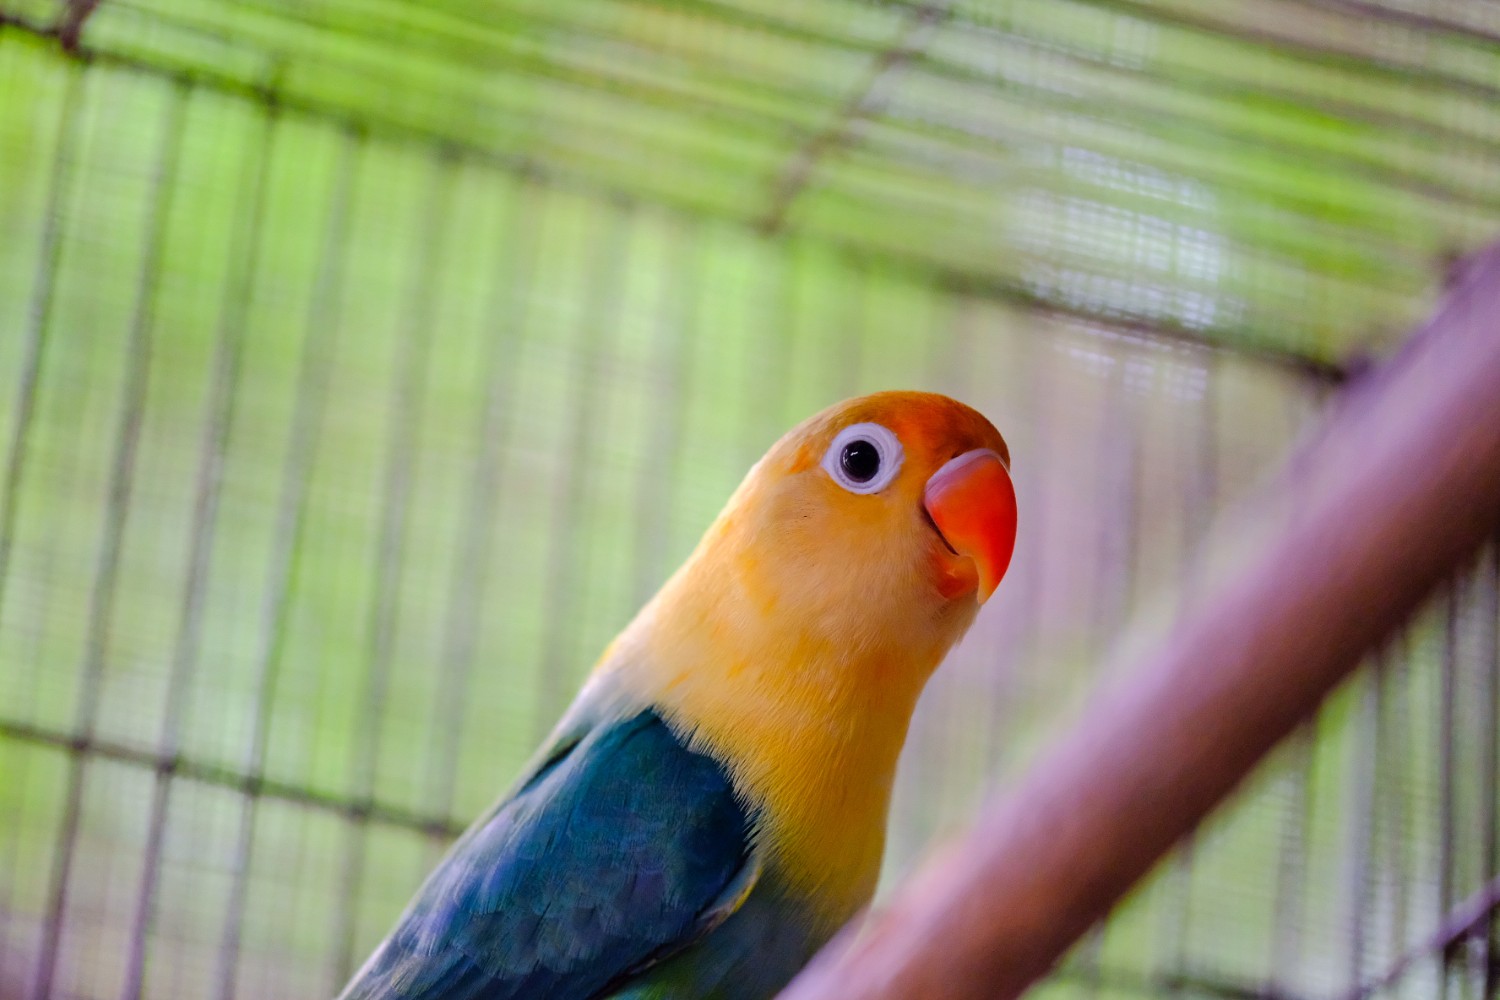 รีวิว พาไปหาซื้อนก Love Bird กันอีกครั้งที่ โครงการเลี้ยงนกสวยงามเพื่อการจำหน่าย  ที่สัตหีบ ชลบุรี - Pantip